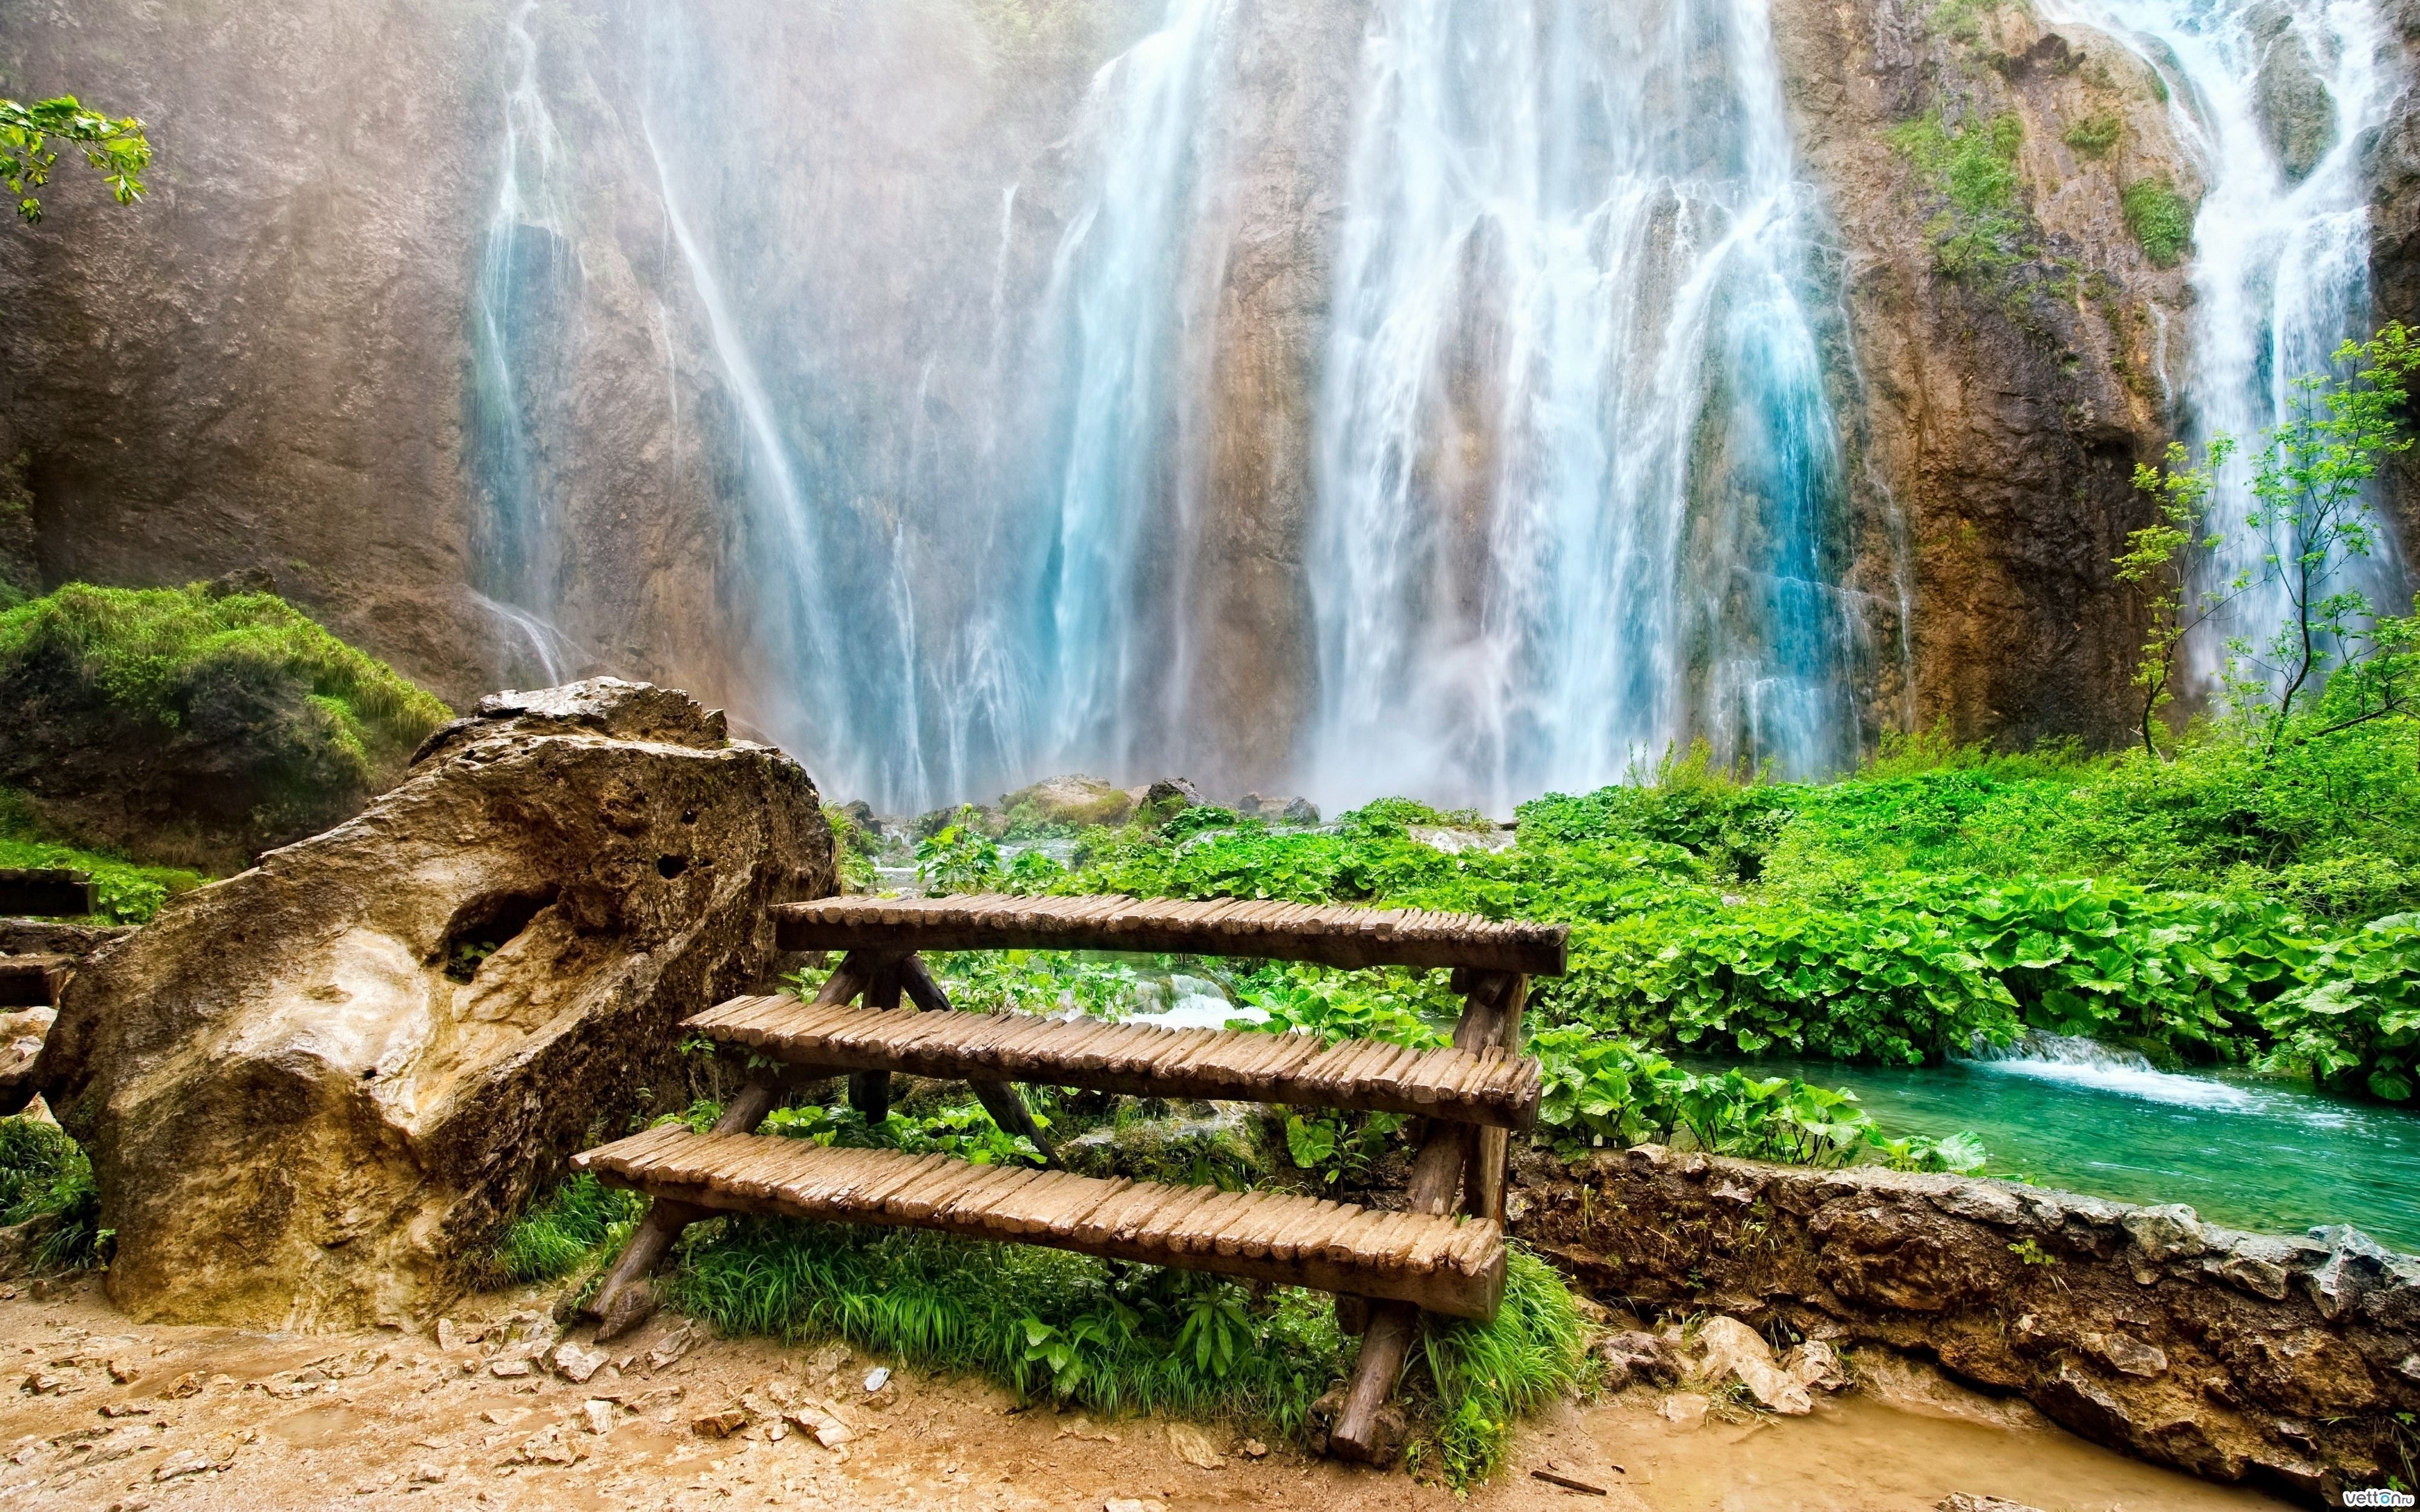 Картинки на заставку. Манзара водопад. Пейзаж водопад. Красивые пейзажи с водопадами. Фон водопад.